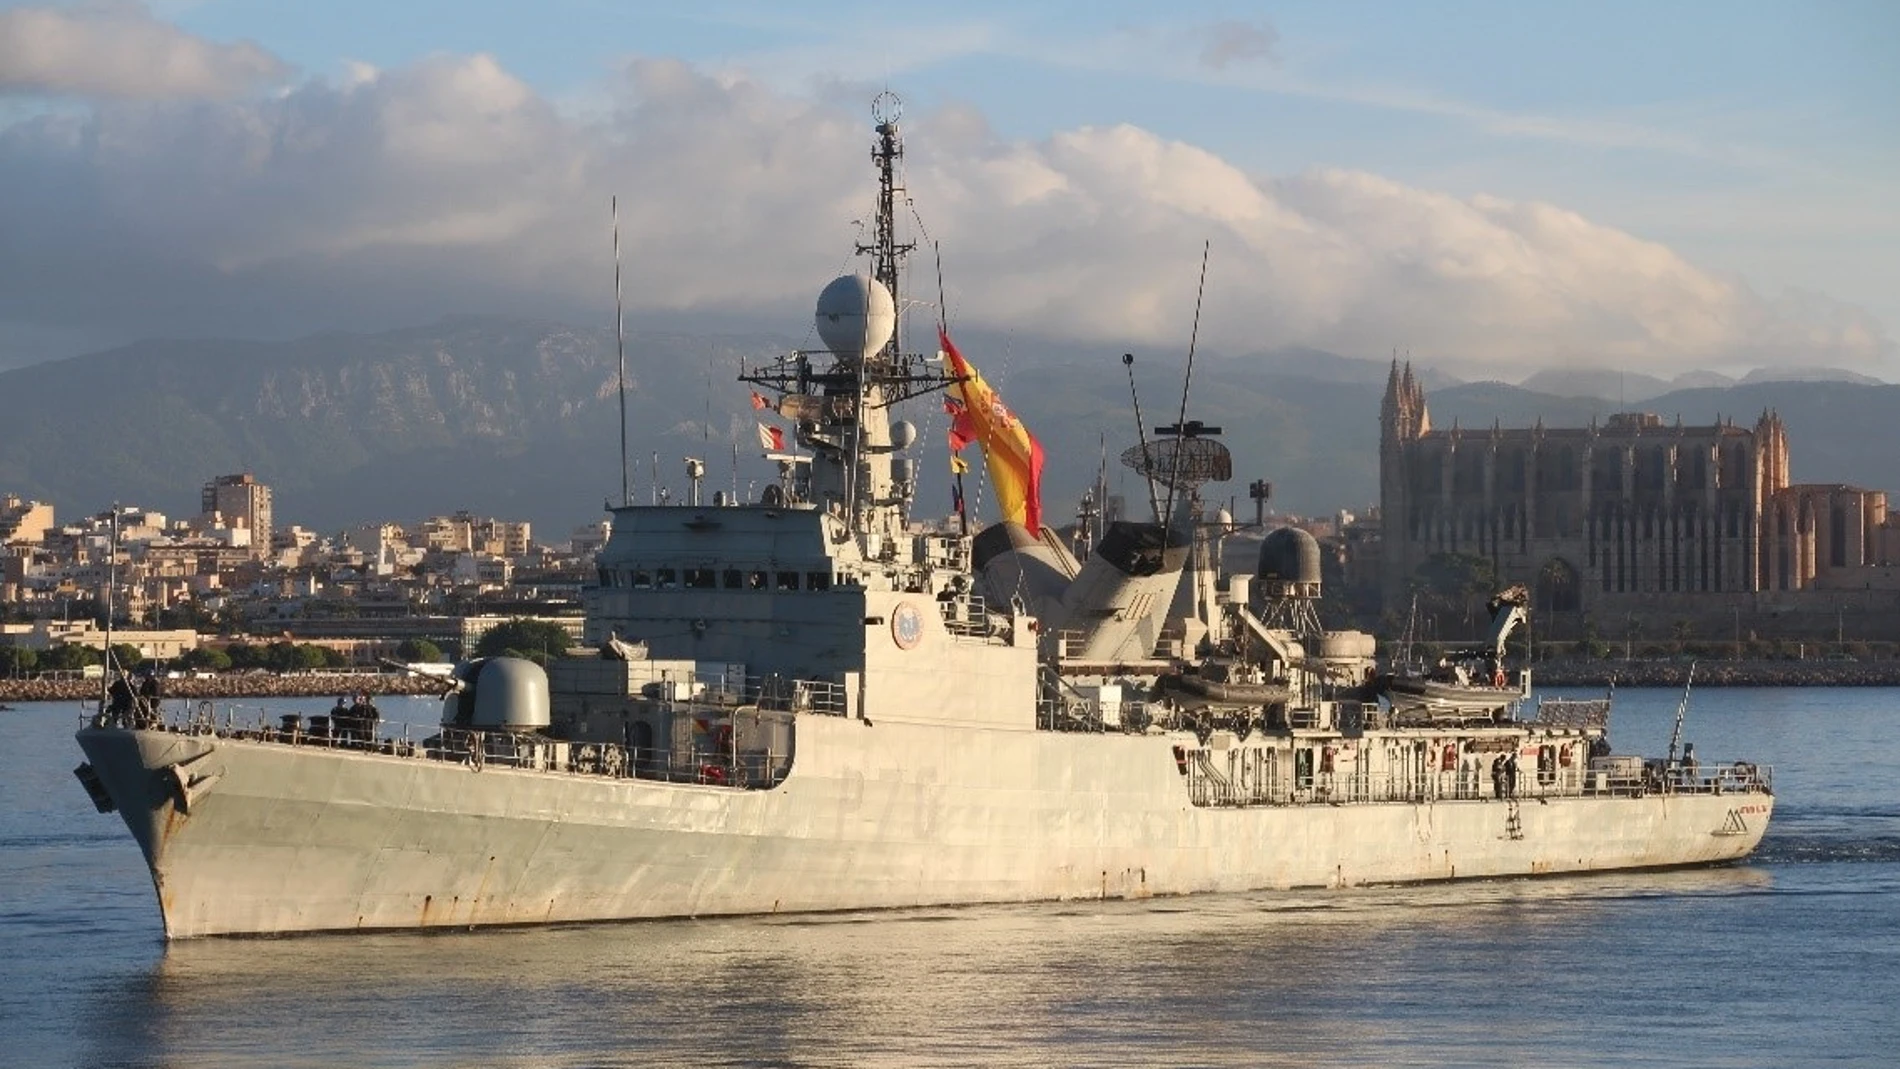 El patrullero de altura 'Infanta Elena', con base en Cartagena (Murcia), concluye su última patrulla de vigilancia y seguridad marítima, tras casi 43 años de servicio